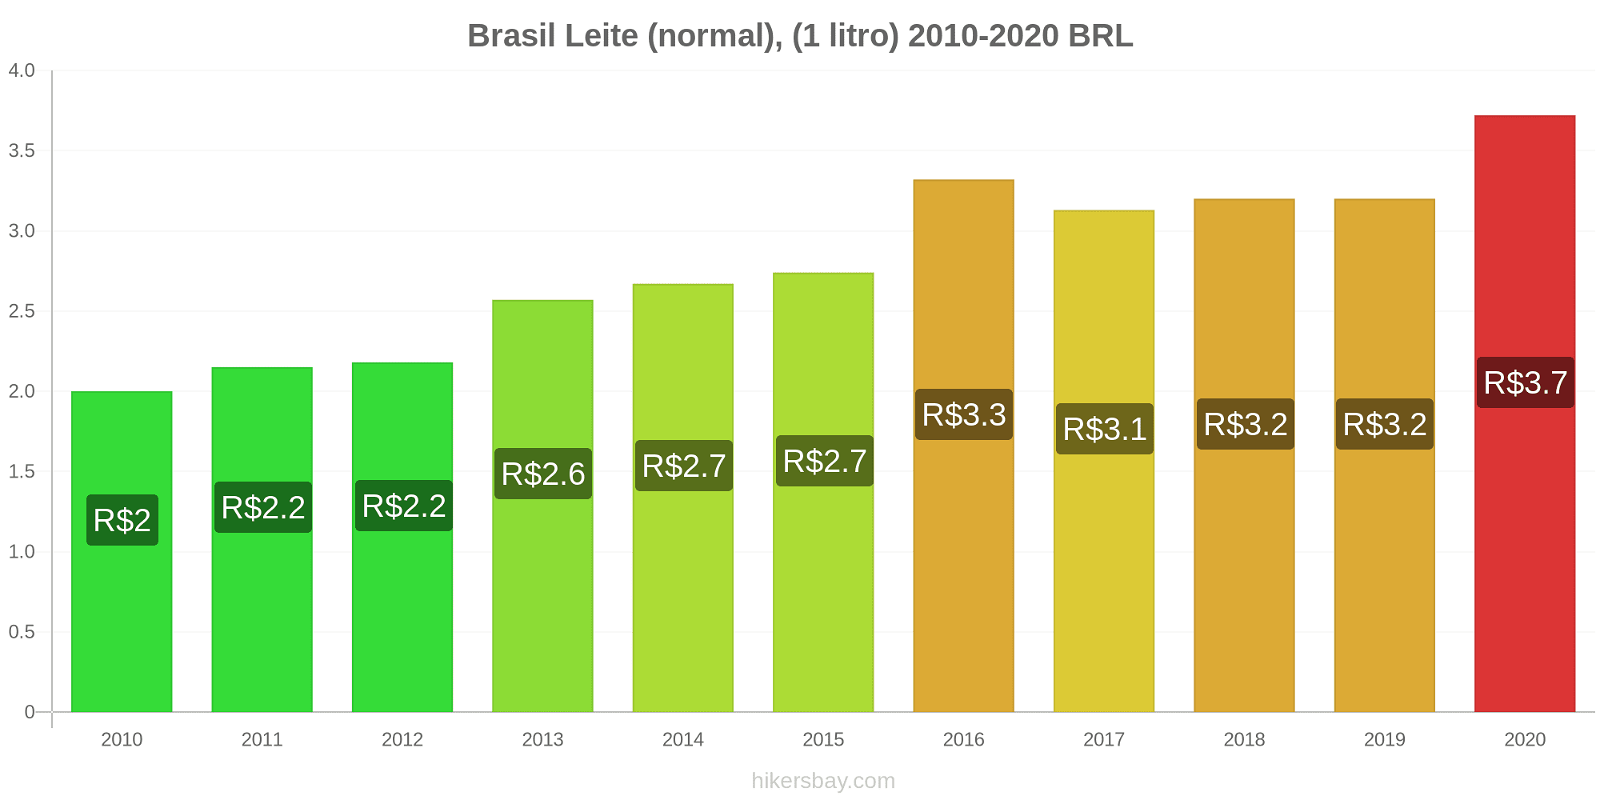 Brasil variação de preço (Regular), leite (1 litro) hikersbay.com